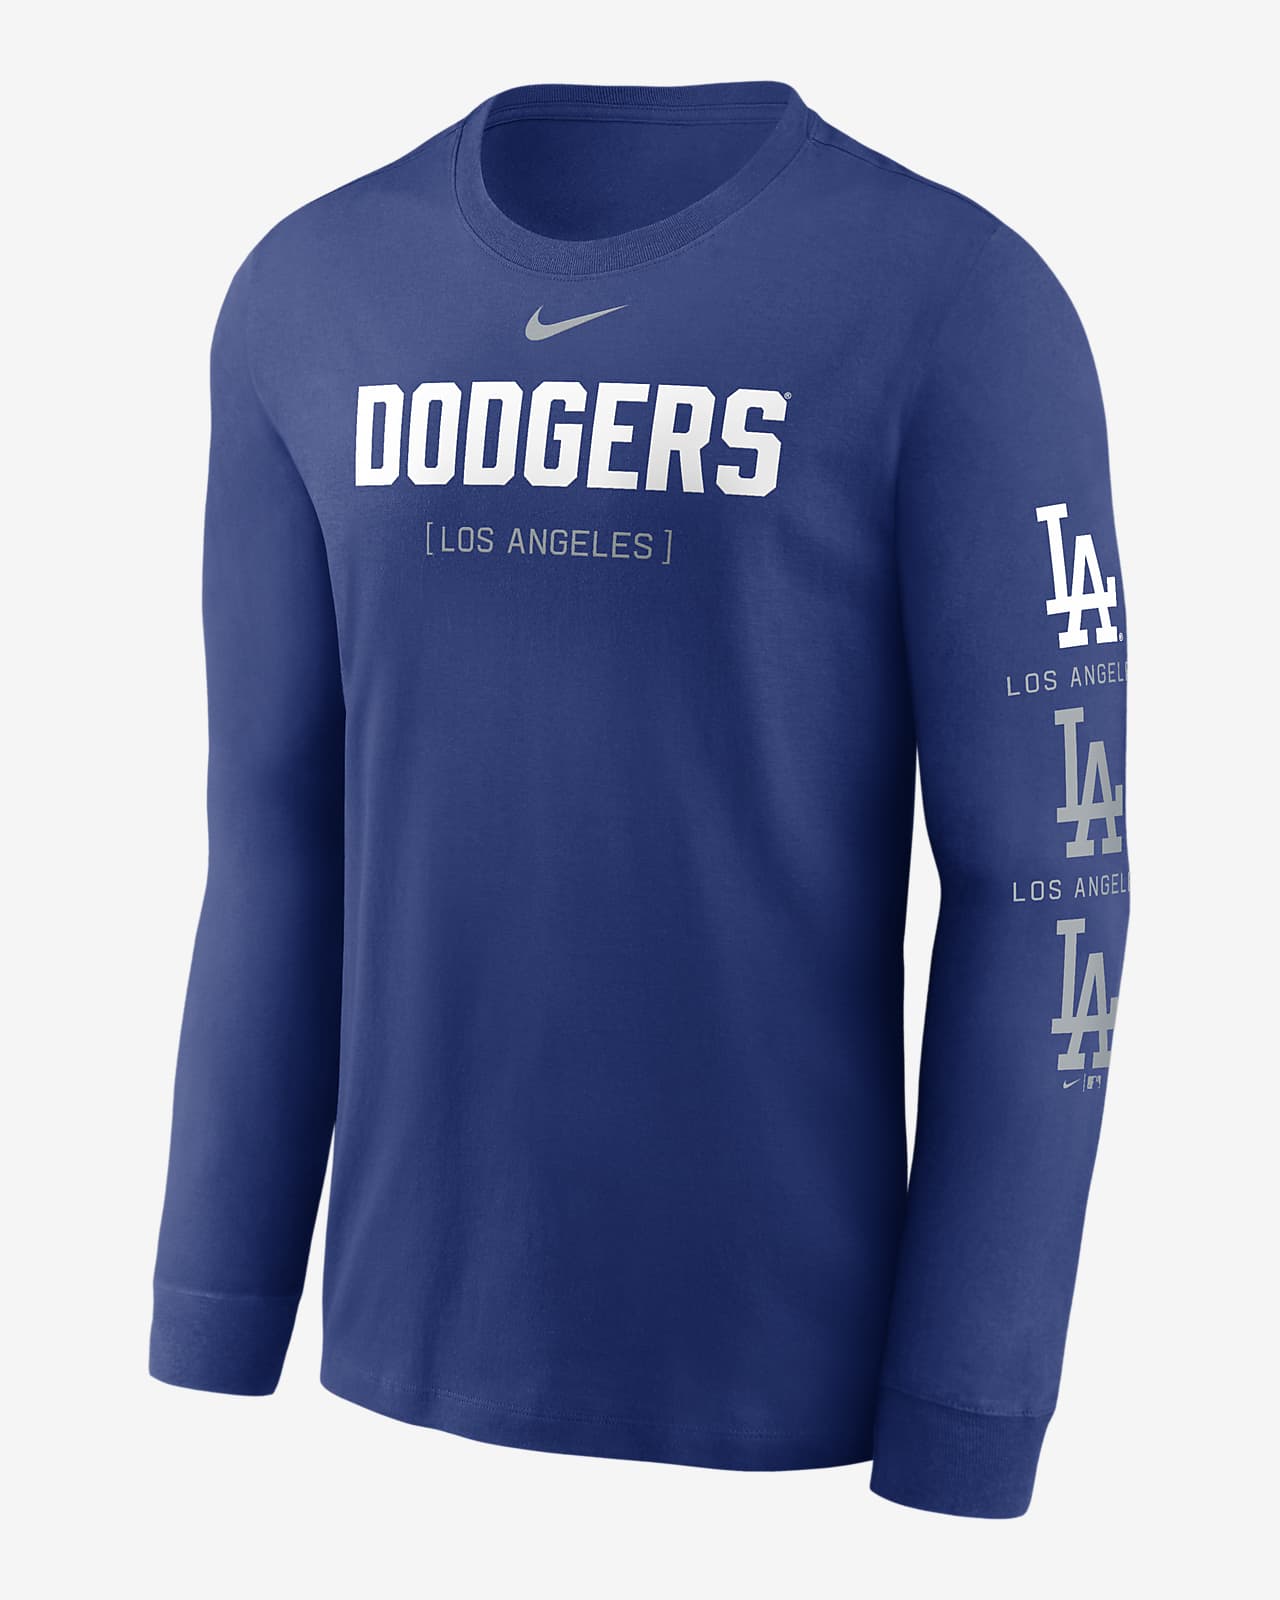 Playera de manga larga Nike de la MLB para hombre Los Angeles Dodgers Repeater